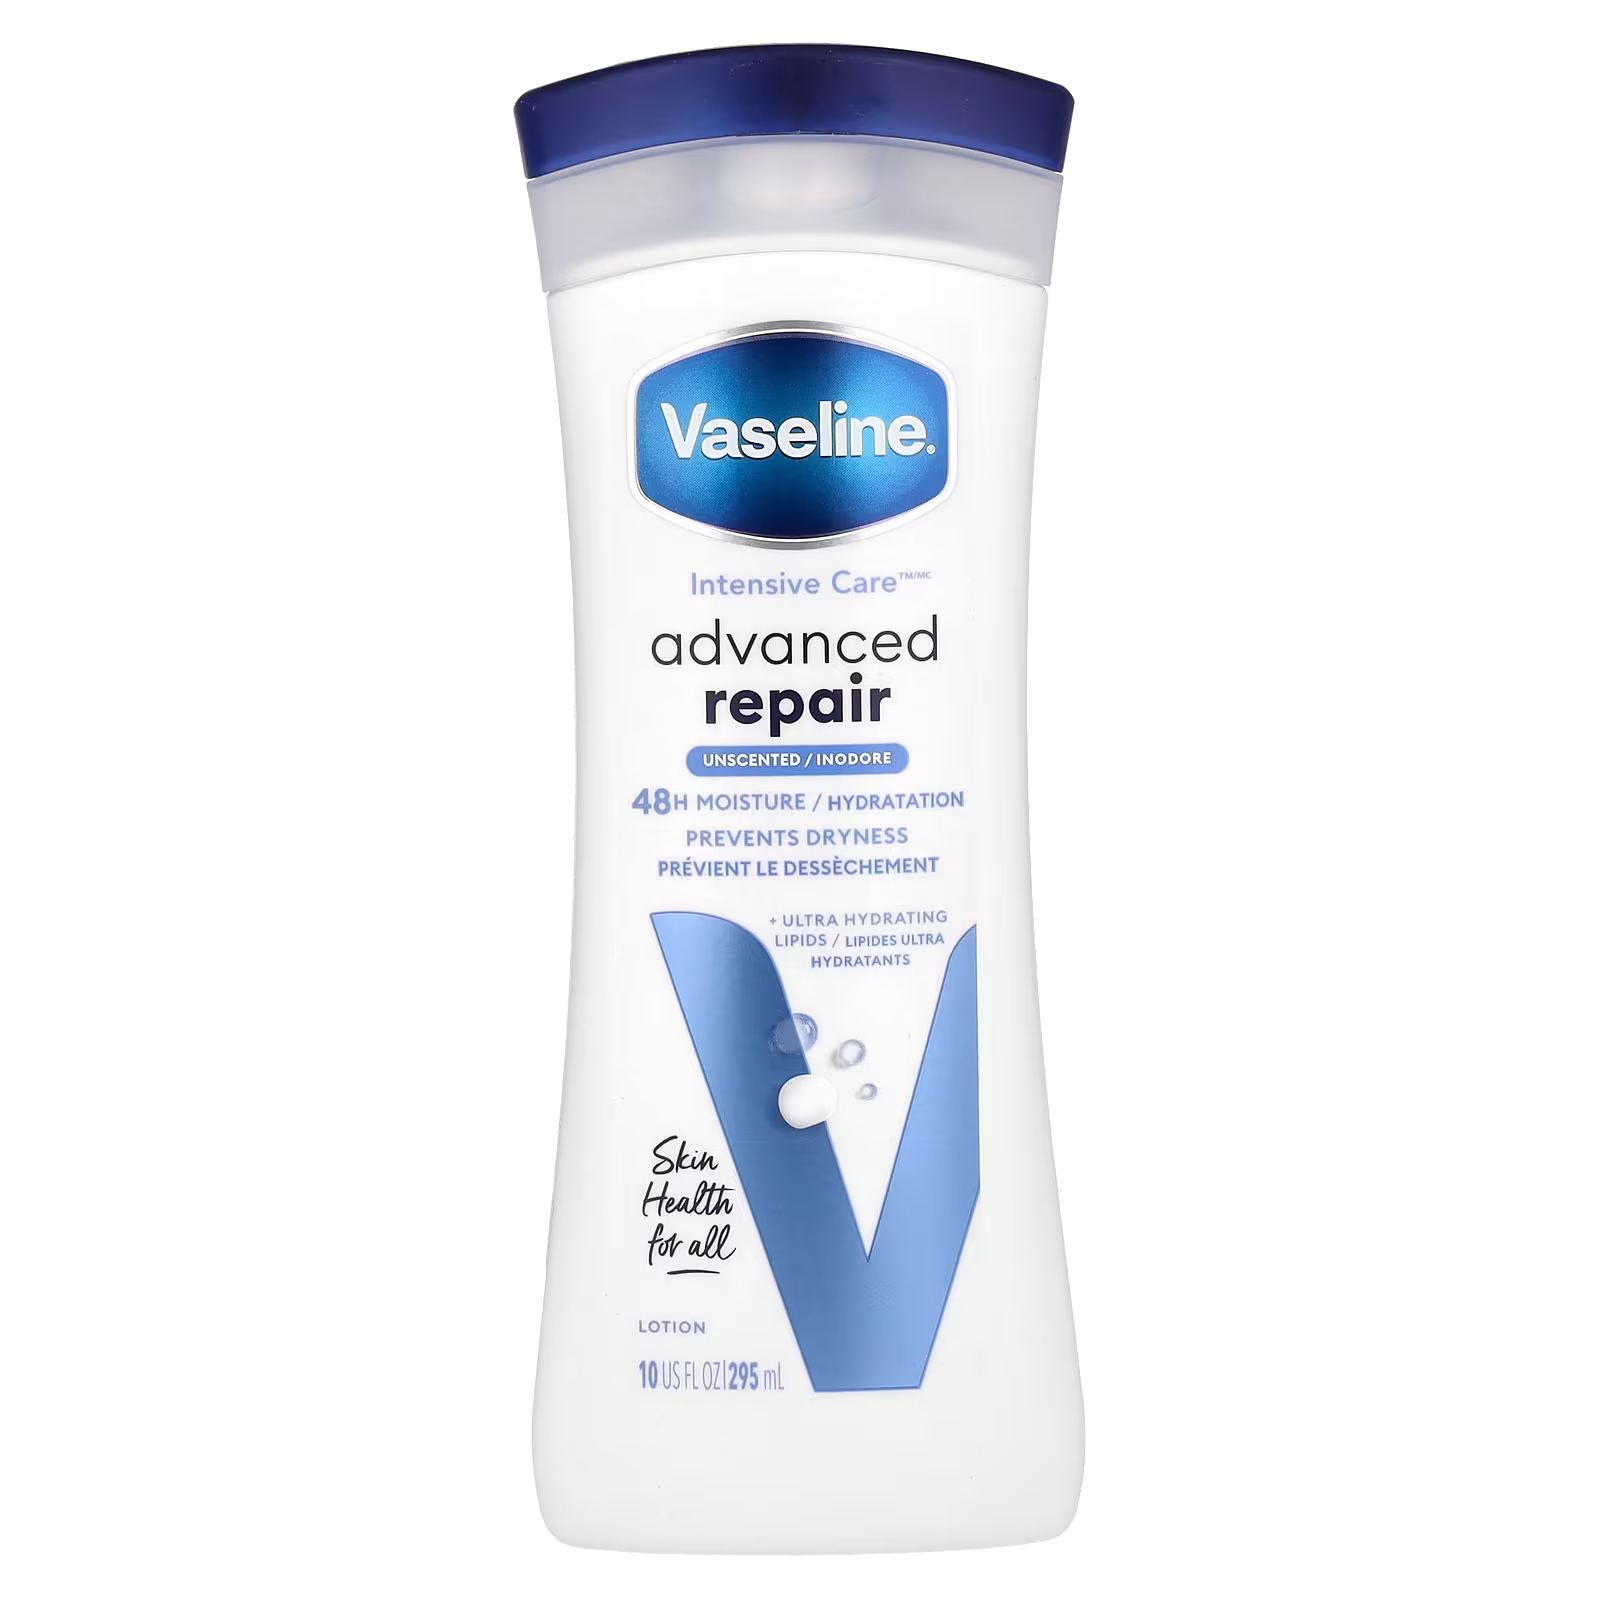 Лосьон для интенсивной терапии Vaseline Advanced Repair без запаха, 10 жидких унций (295 мл)